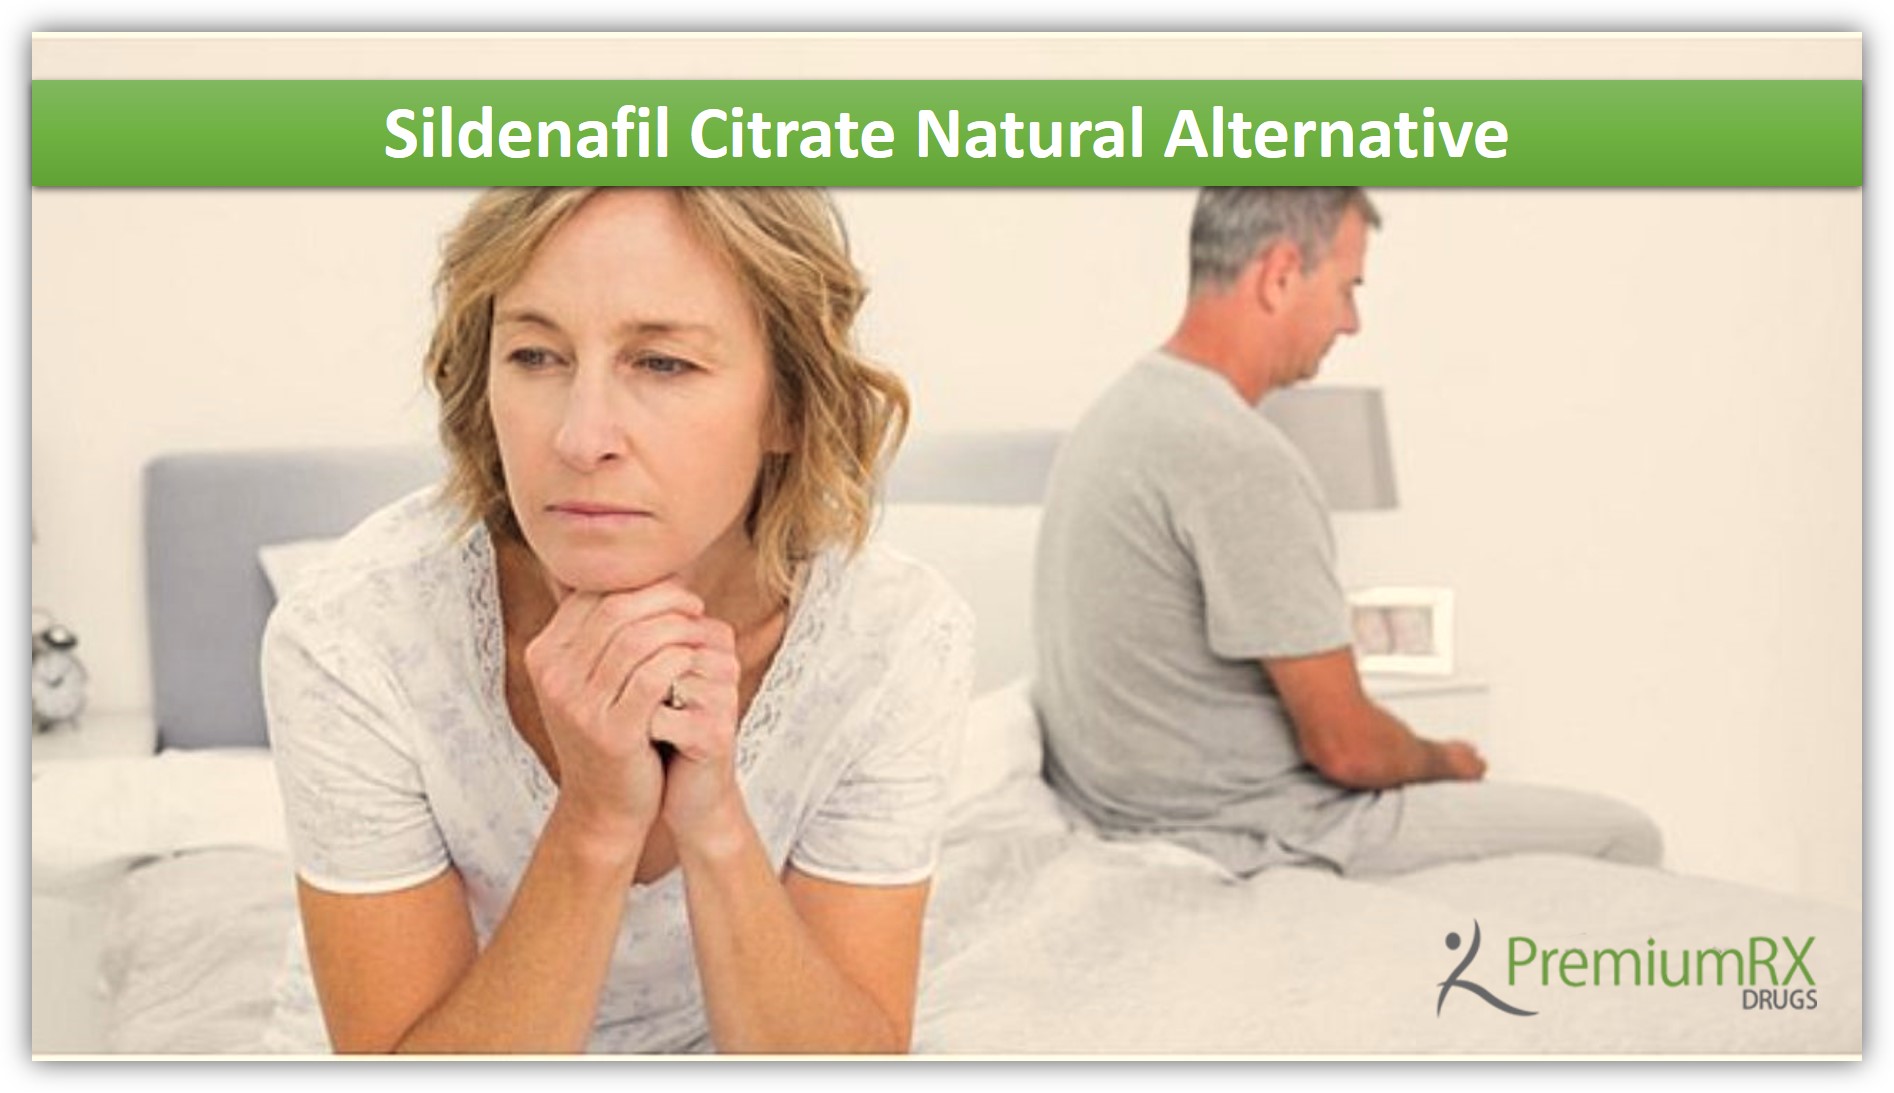 Sildenafil Citrate Natural Alternative